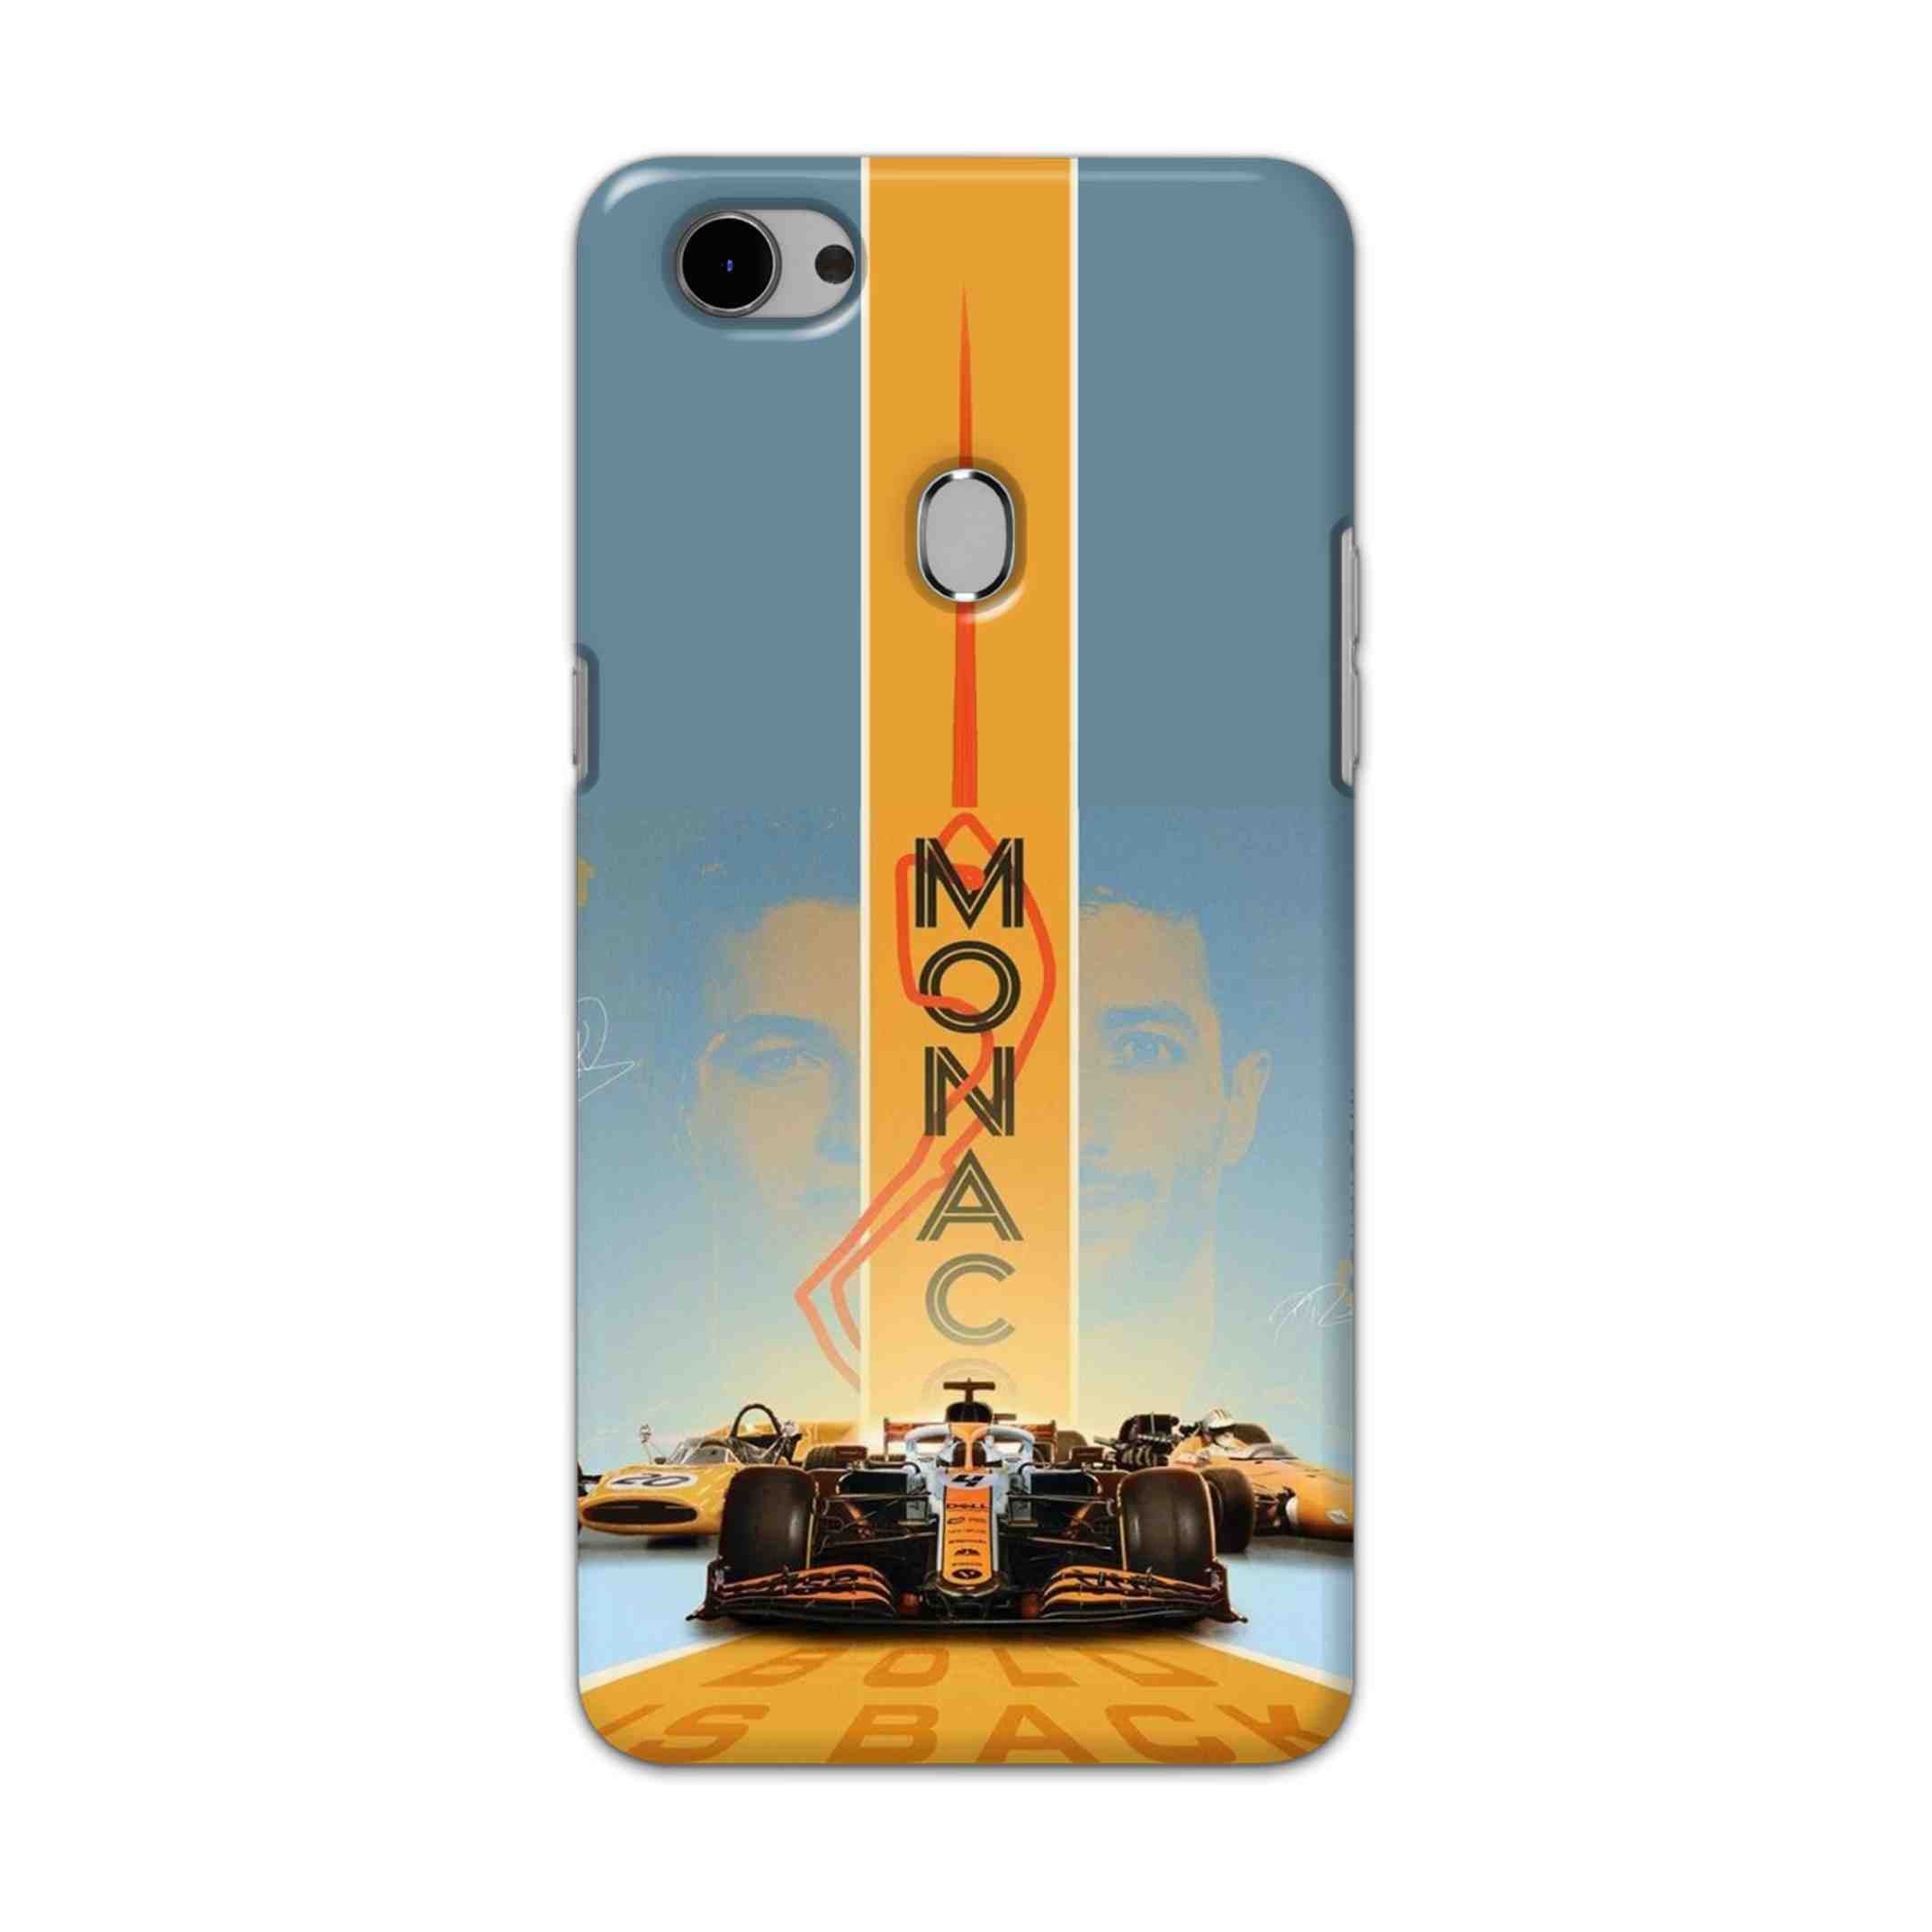 Buy Monac Formula Hard Back Mobile Phone Case Cover For Oppo F7 Online